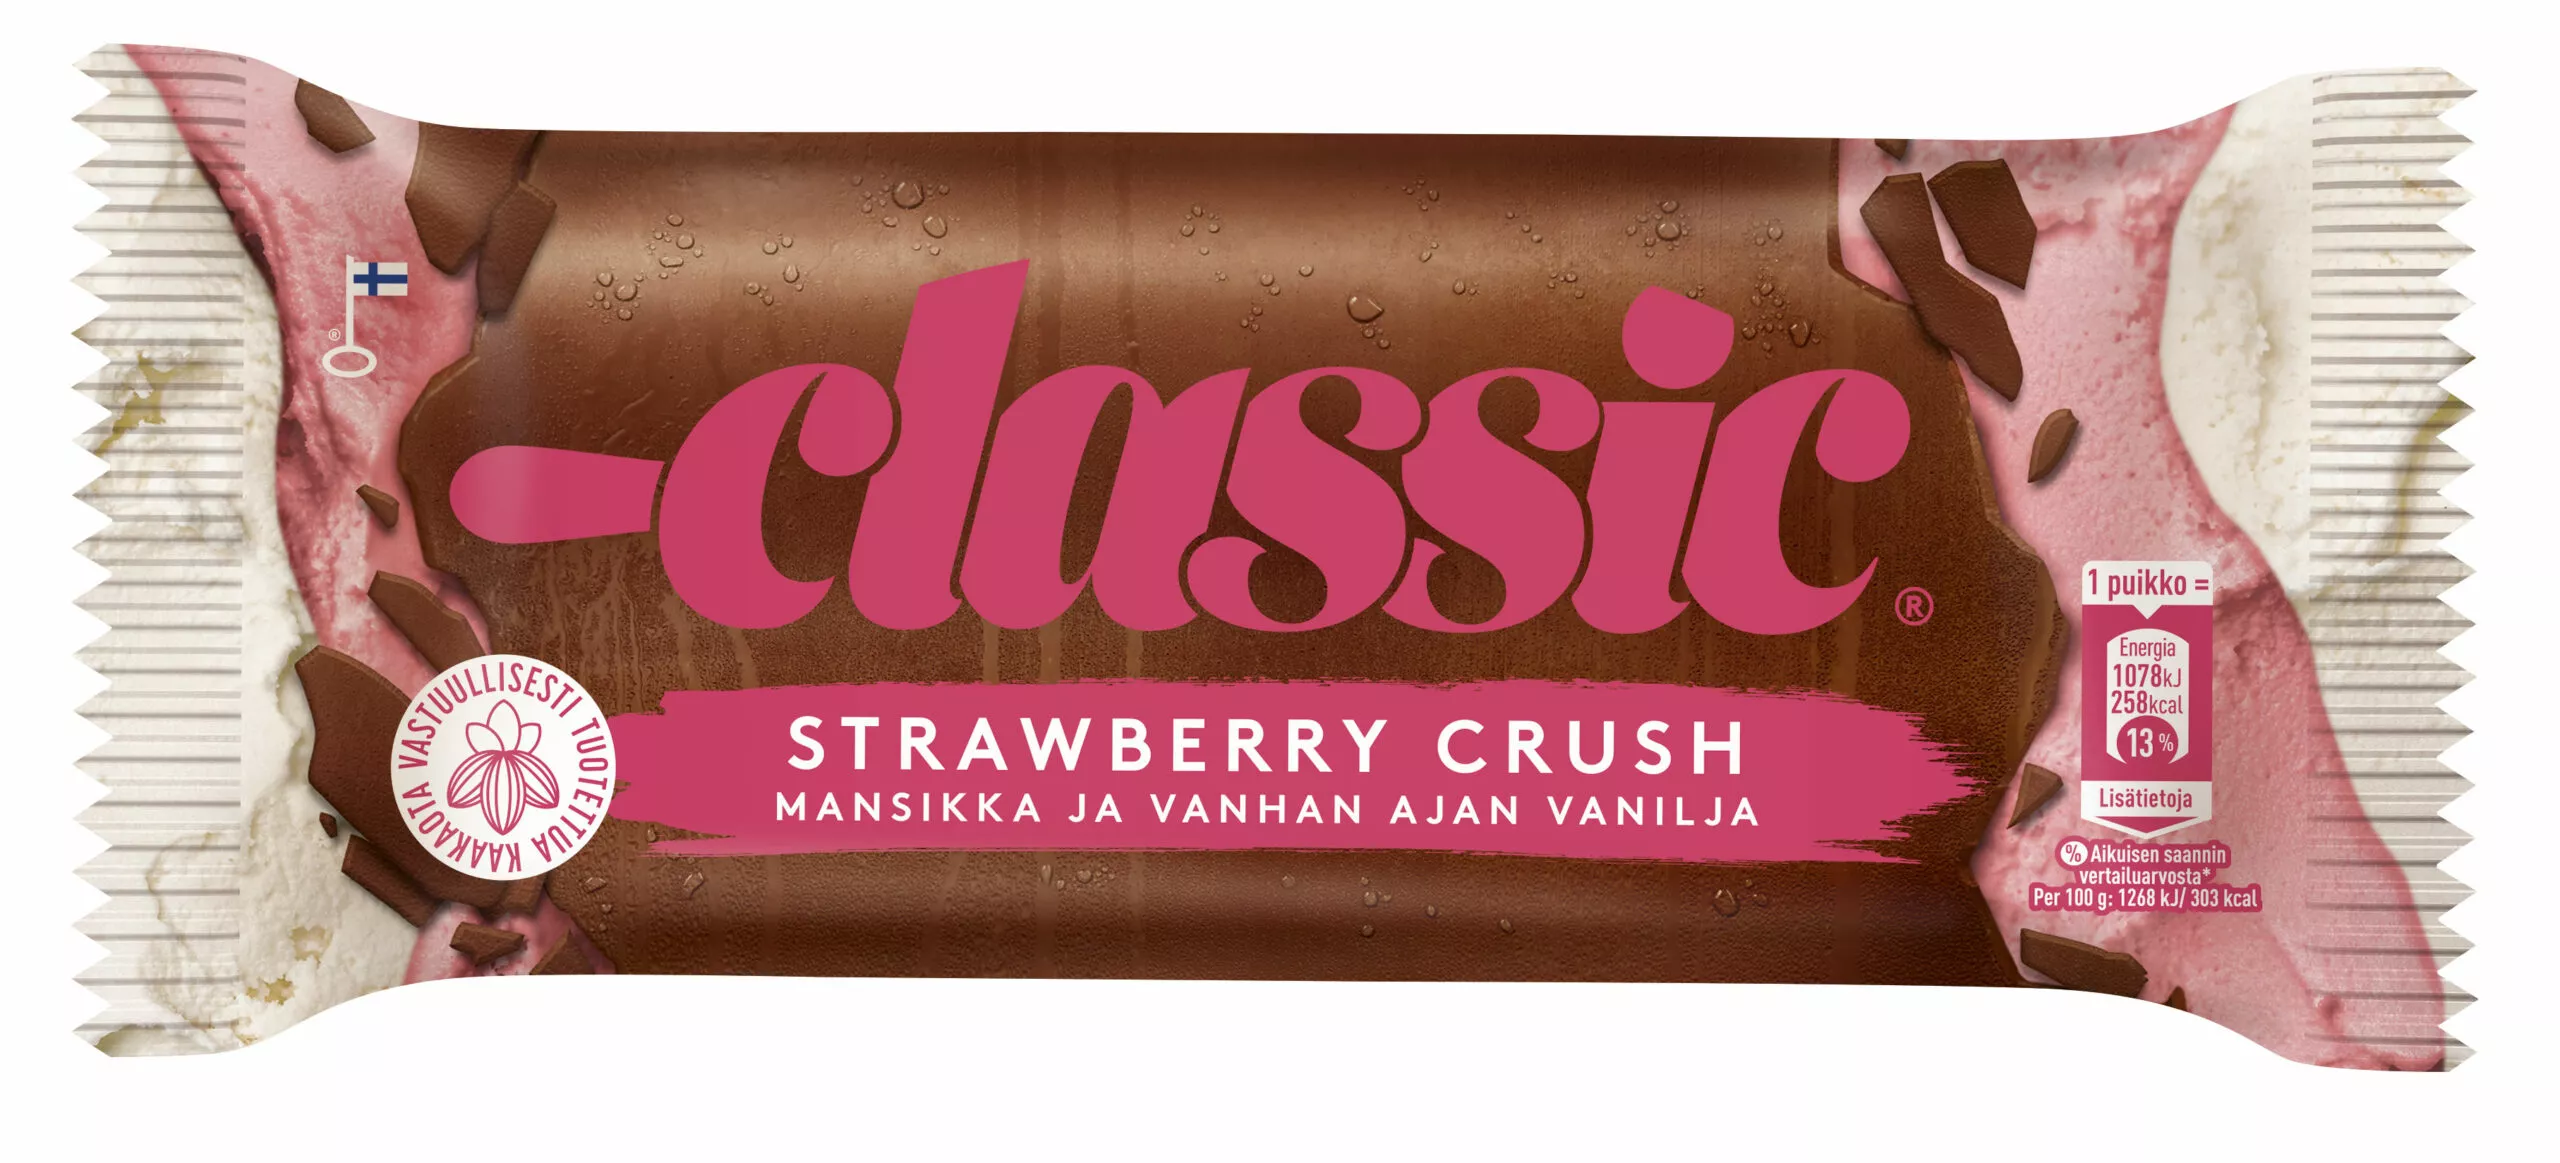 Classis Strawberry Crush -jäätelön kääre